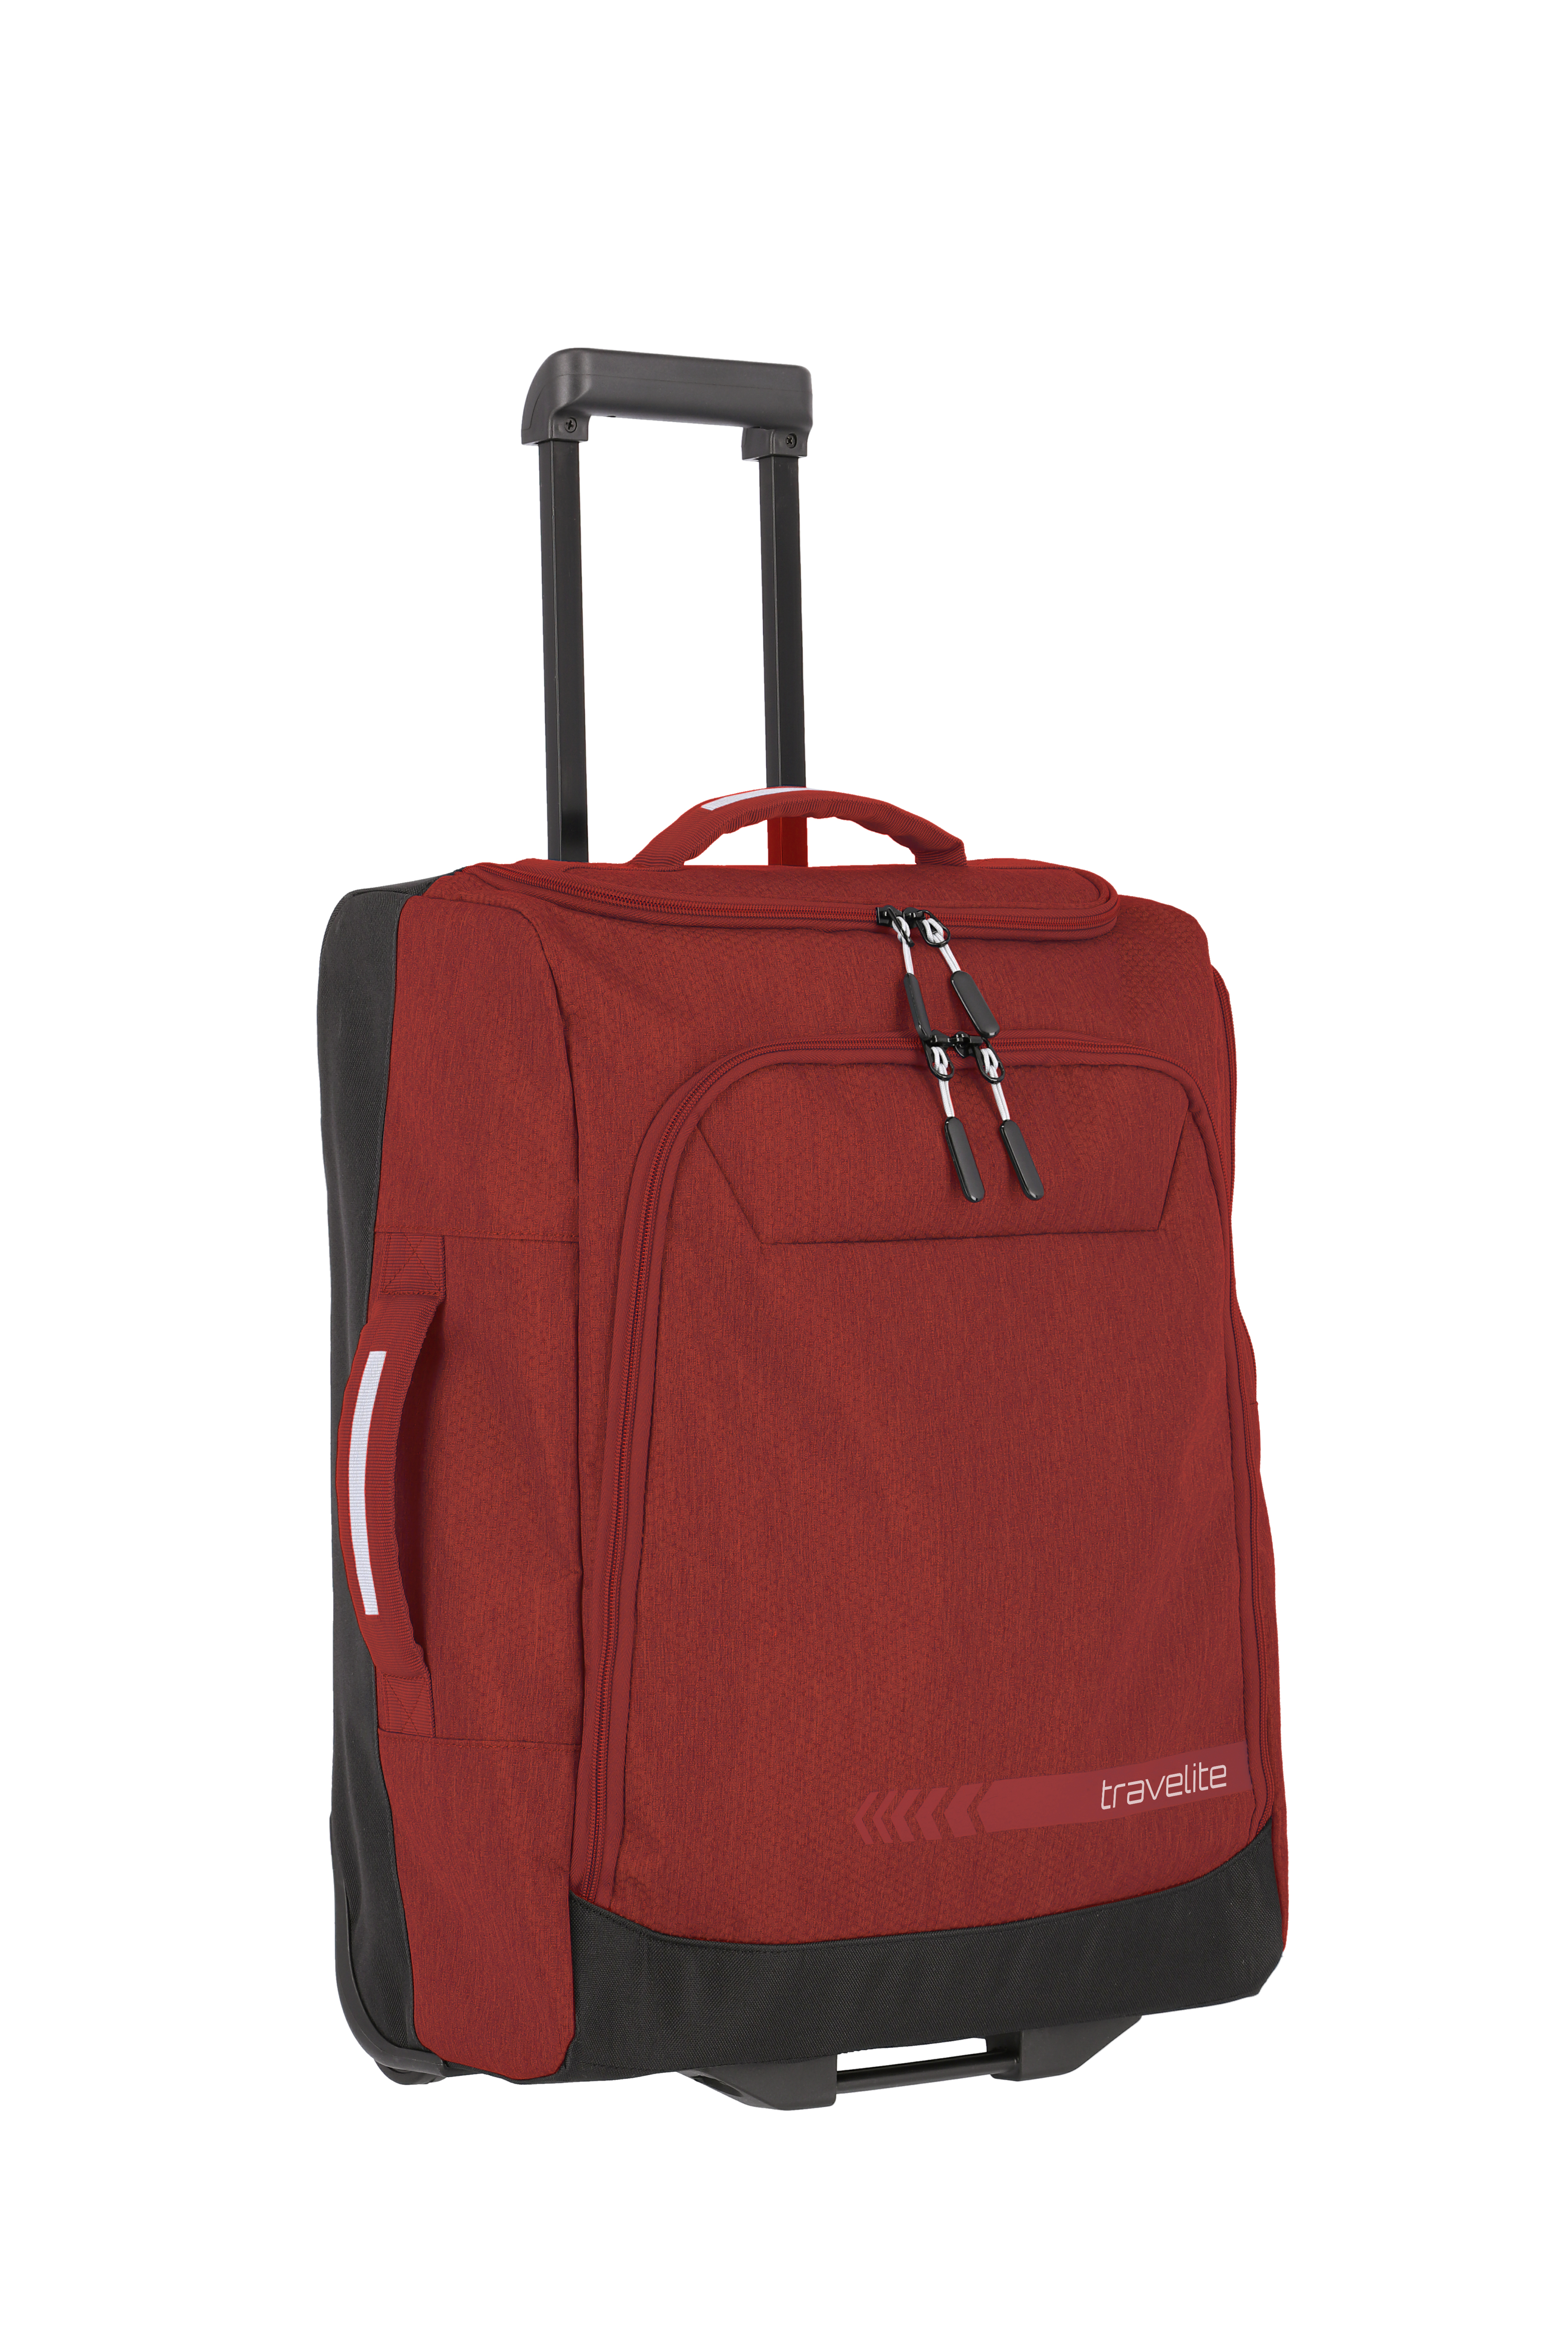 travelite Kick Off Rollenreisetasche S  in Rot (44 Liter), Reisetasche mit Rollen